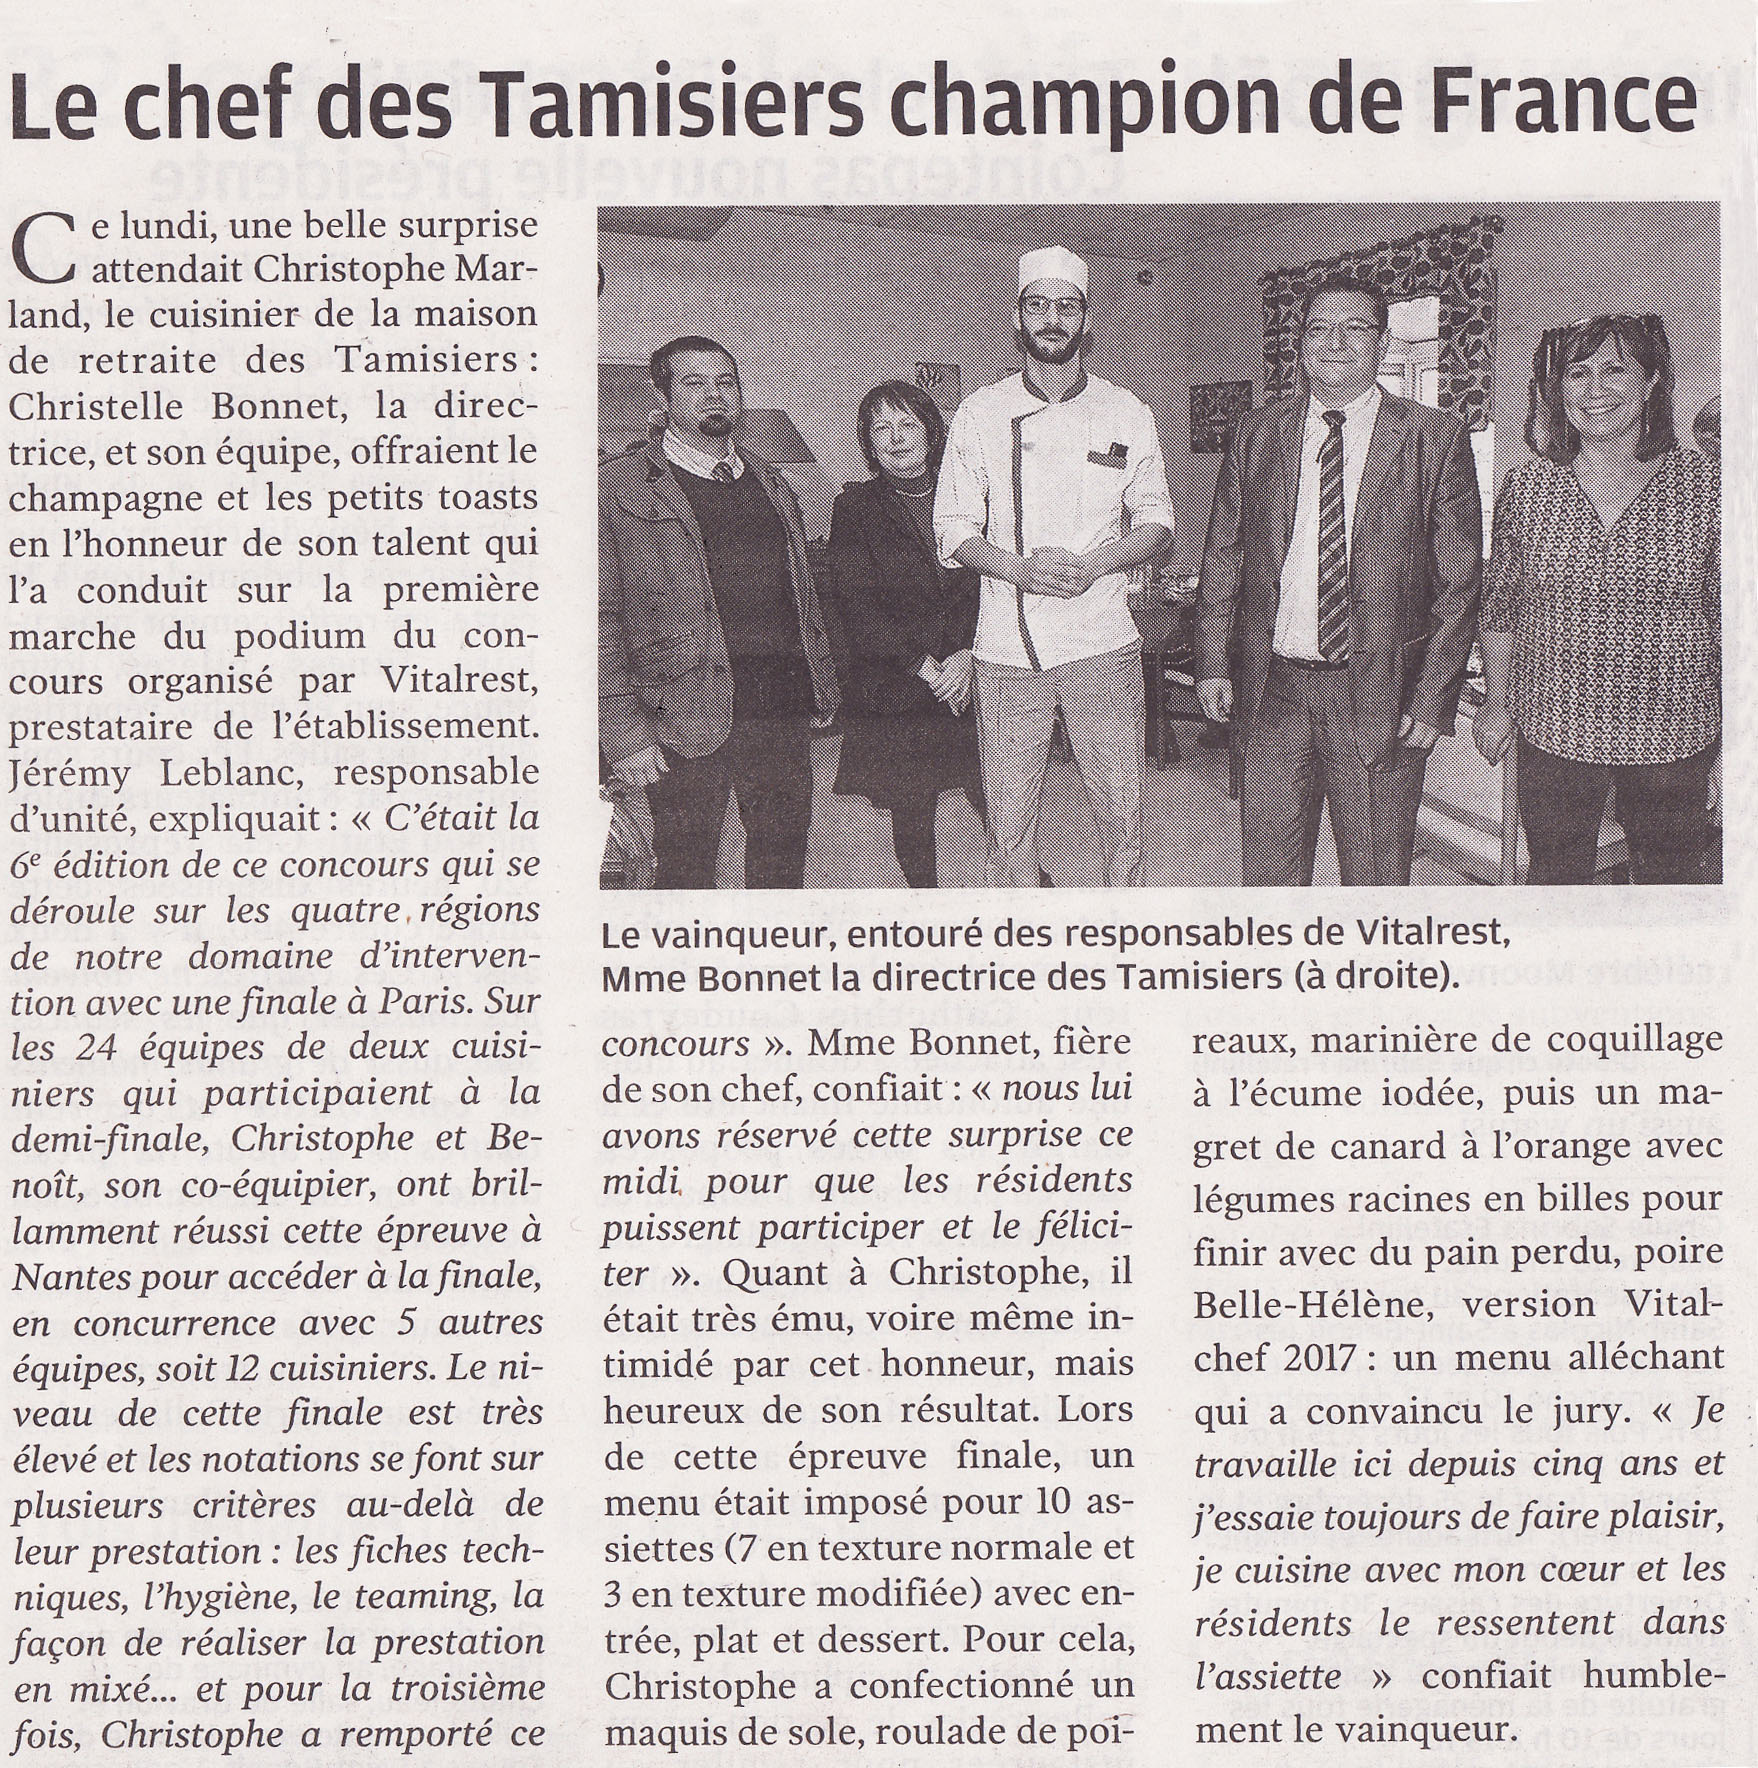 Image de l'article de la presse Ouest France sur le chef des Tamisiers (Christophe Marland) champion de France